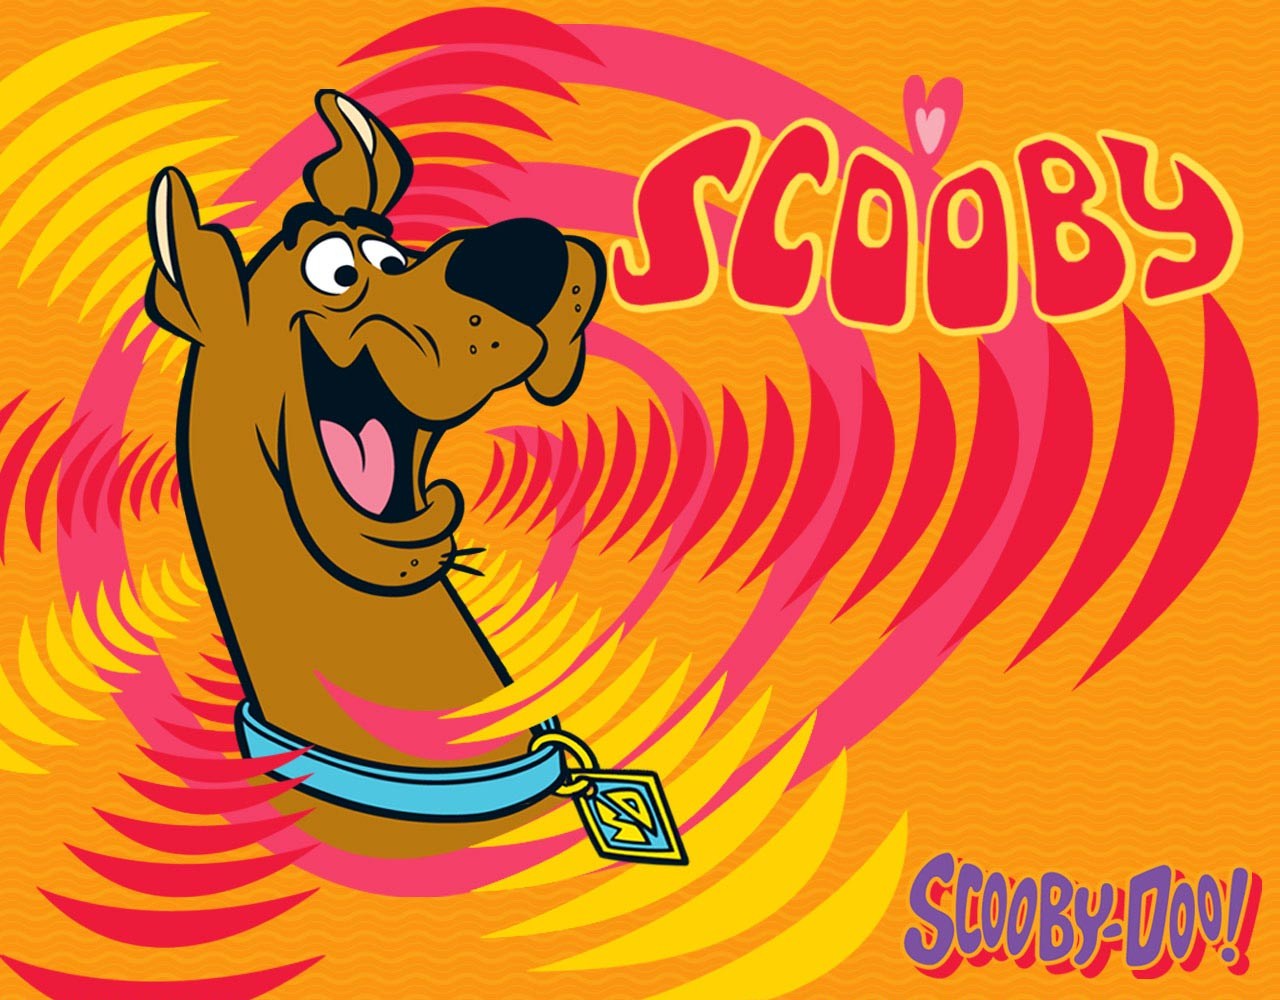 Scooby Doo Wallpaper for Desktop